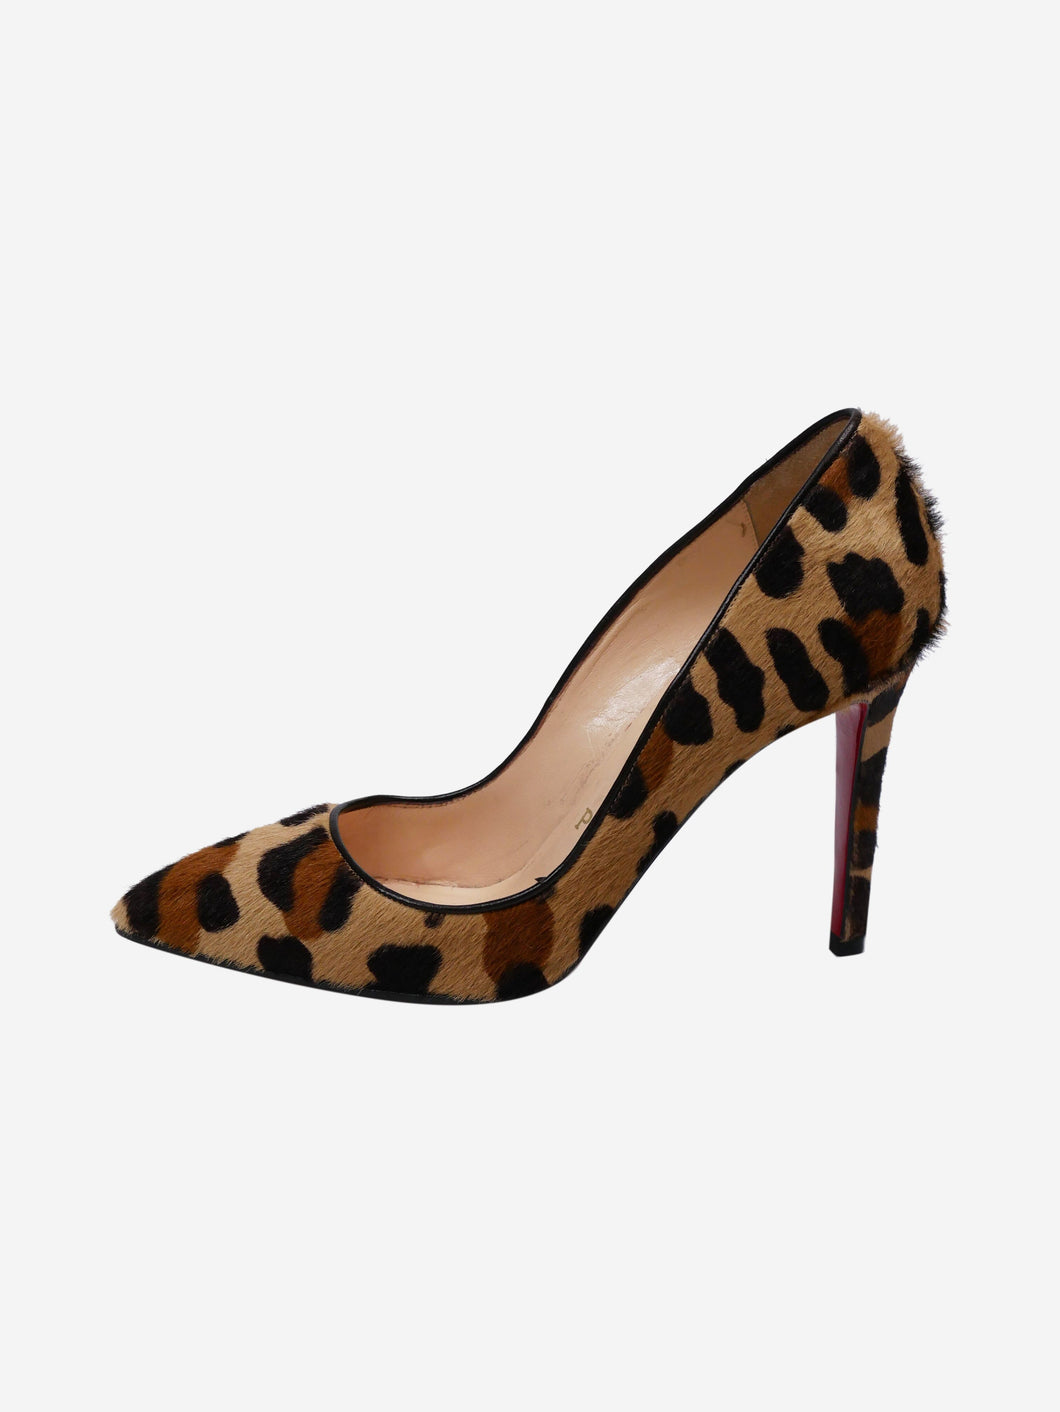 Framework Kvinde Merchandising Christian Louboutin pre-owned animal print heels | SOTT